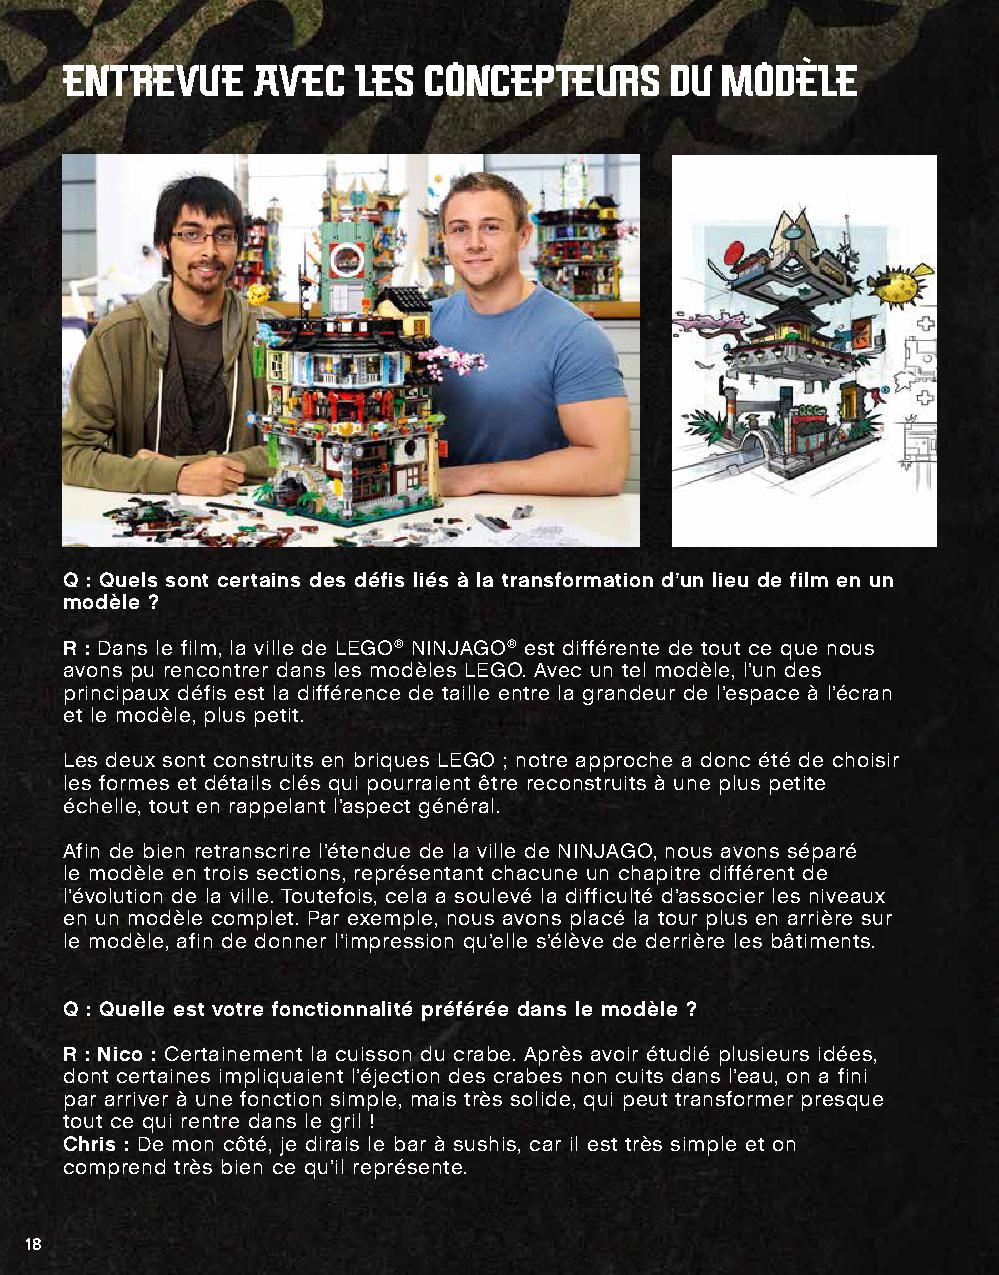 ニンジャゴー シティ 70620 レゴの商品情報 レゴの説明書・組立方法 18 page